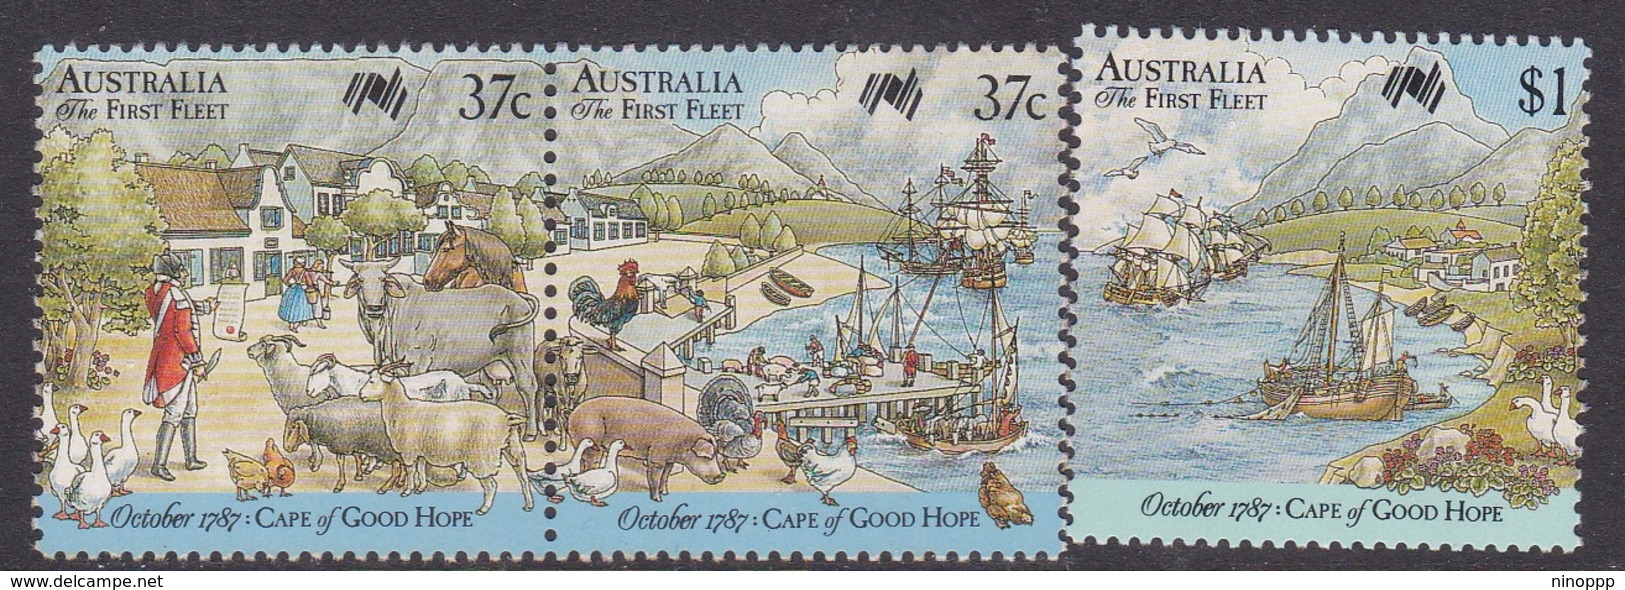 Australia ASC 1100-1102 1987 Australia Bicentennial IX First Fleet At Cape Of Good Hope, Mint Never Hinged - Mint Stamps